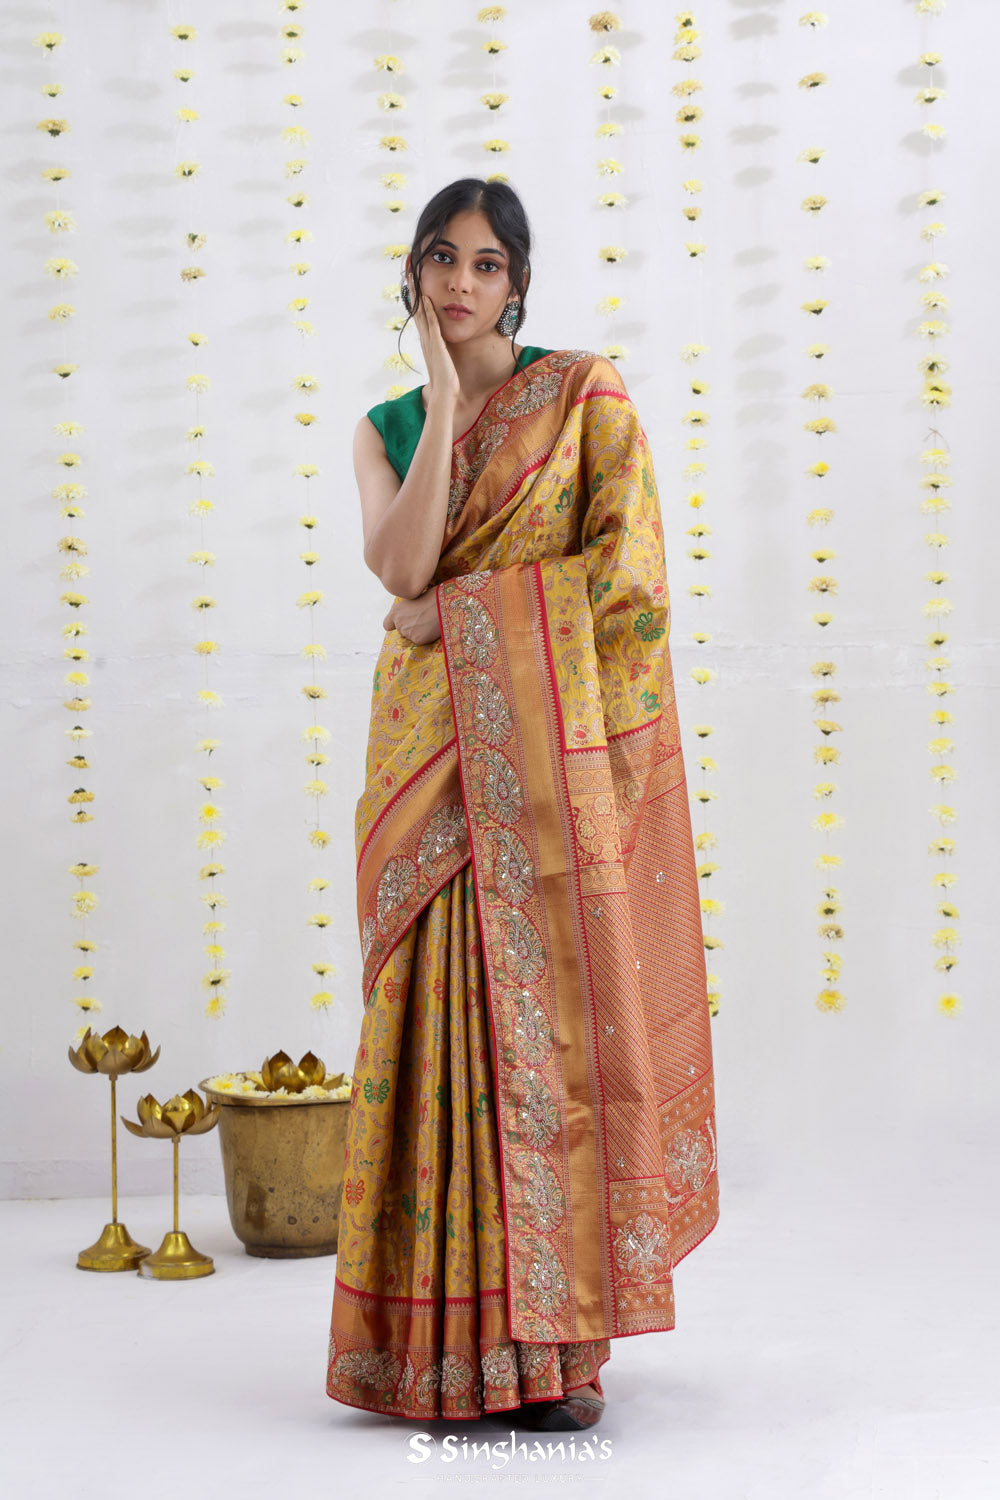 Warm Yellow Kanjivaram Silk Saree With Embroidery Border